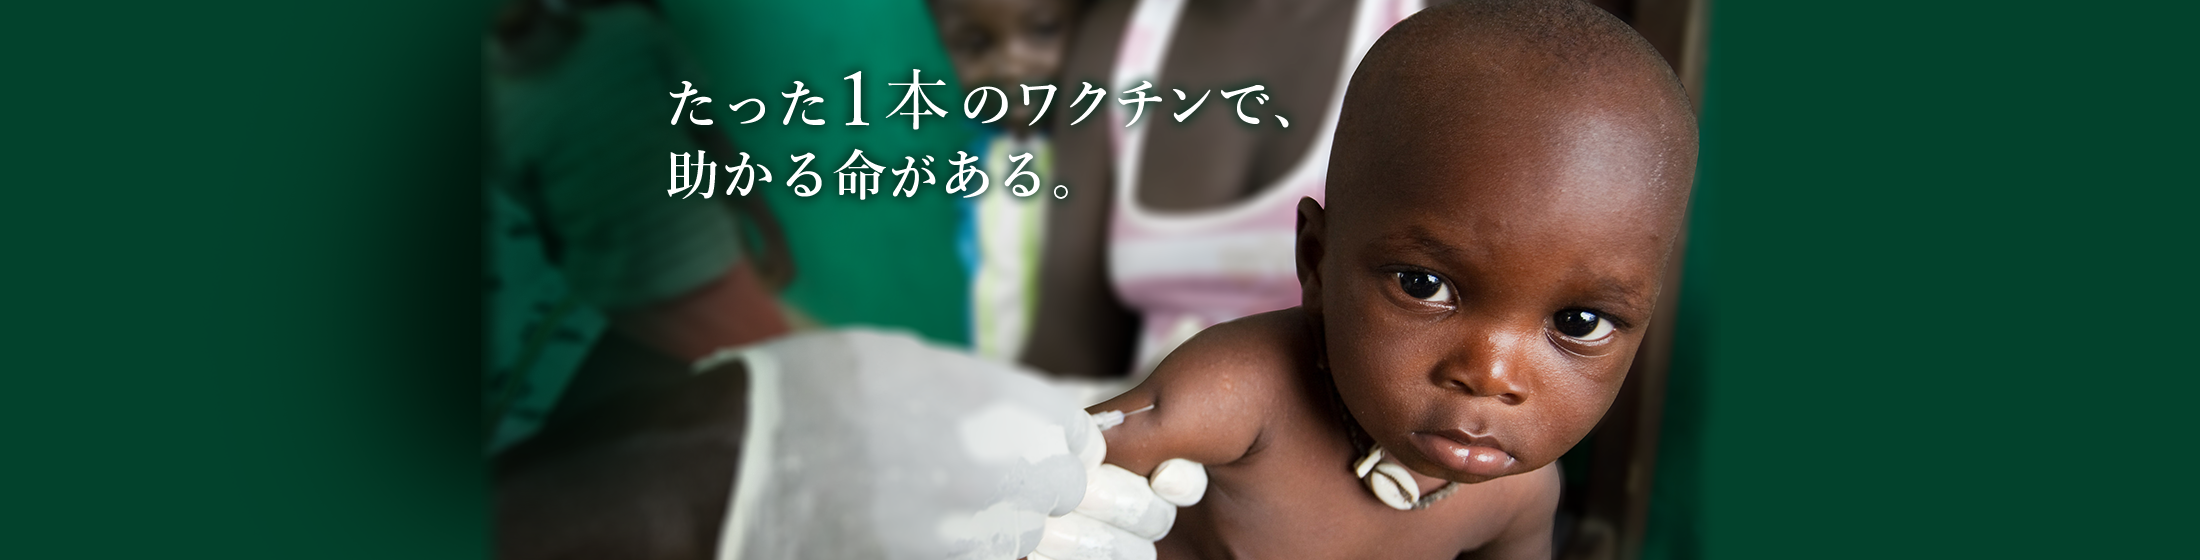 たった一本のワクチンで助かる命がある。 | 日本ユニセフ協会